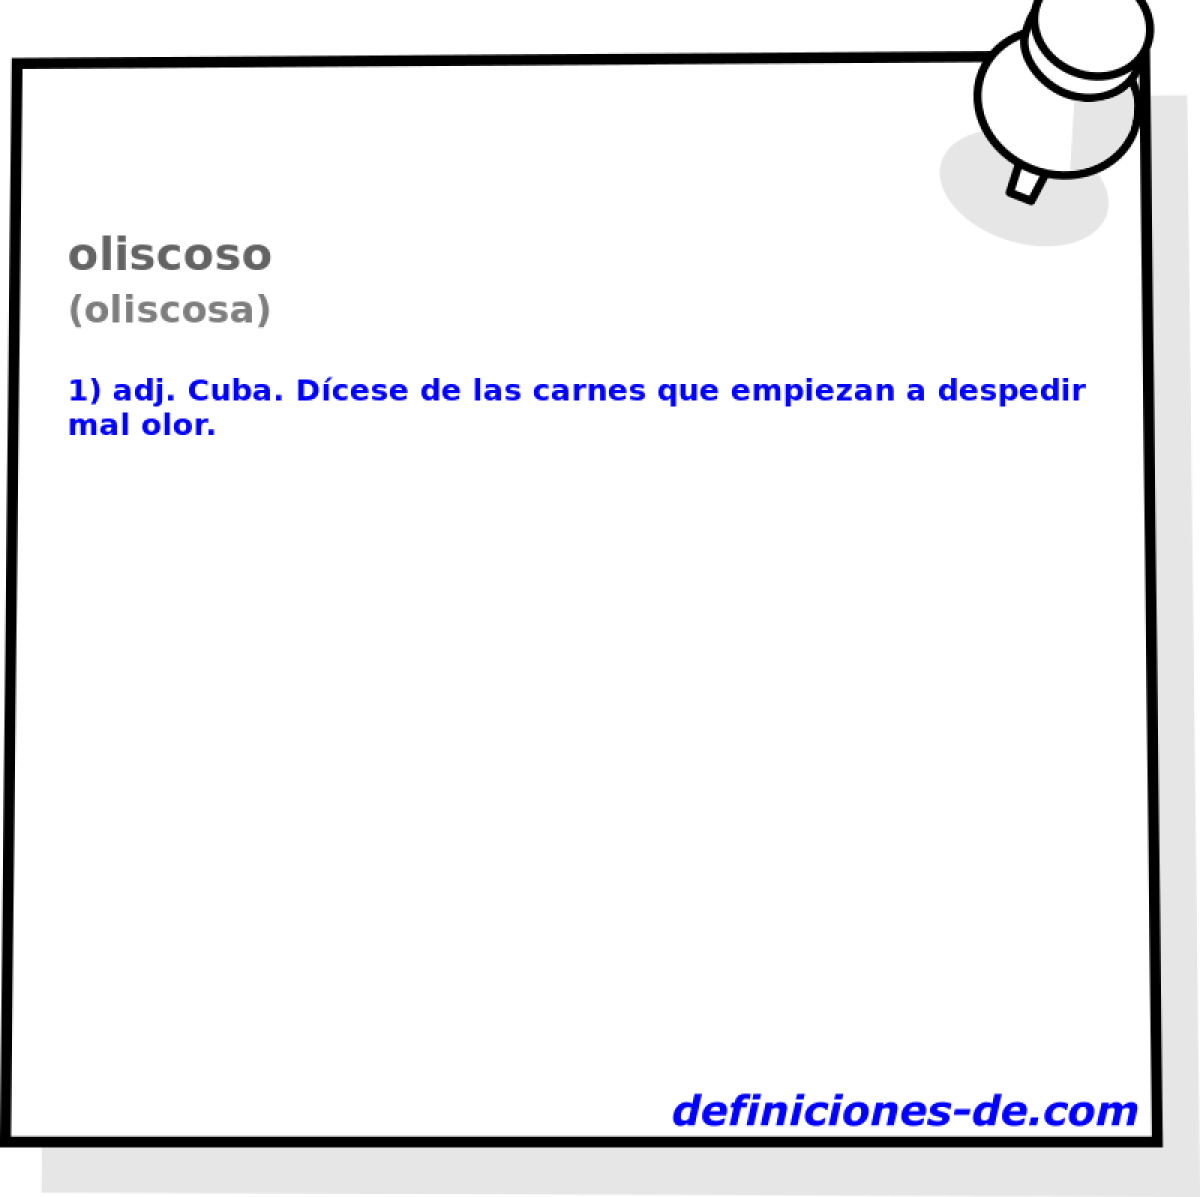 oliscoso (oliscosa)